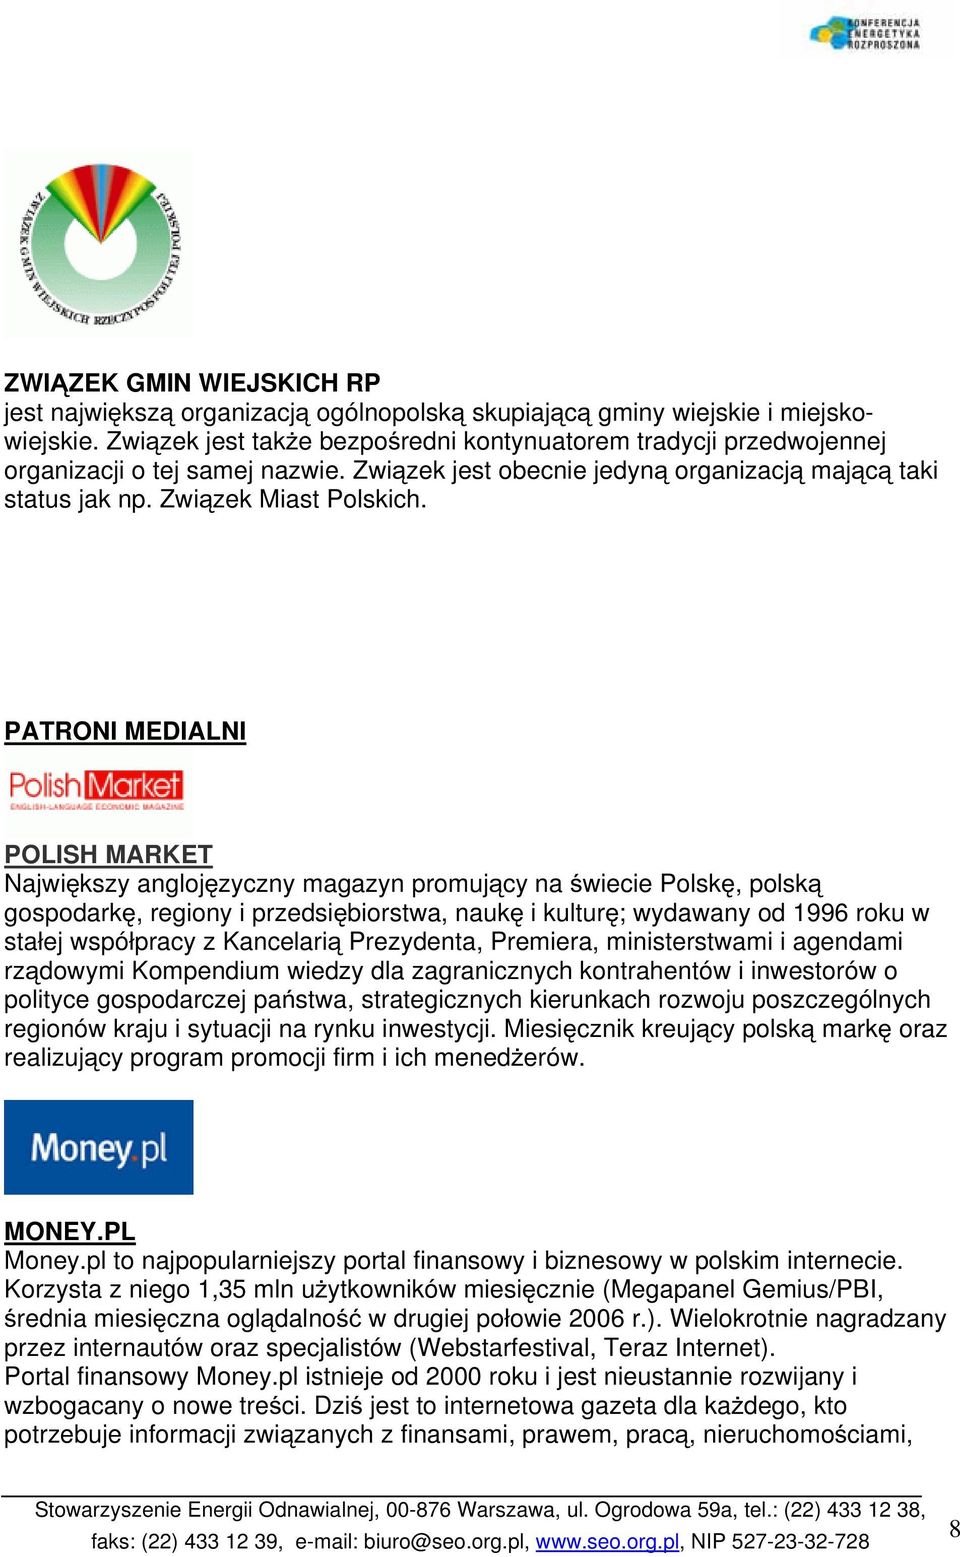 PATRONI MEDIALNI POLISH MARKET Największy anglojęzyczny magazyn promujący na świecie Polskę, polską gospodarkę, regiony i przedsiębiorstwa, naukę i kulturę; wydawany od 1996 roku w stałej współpracy